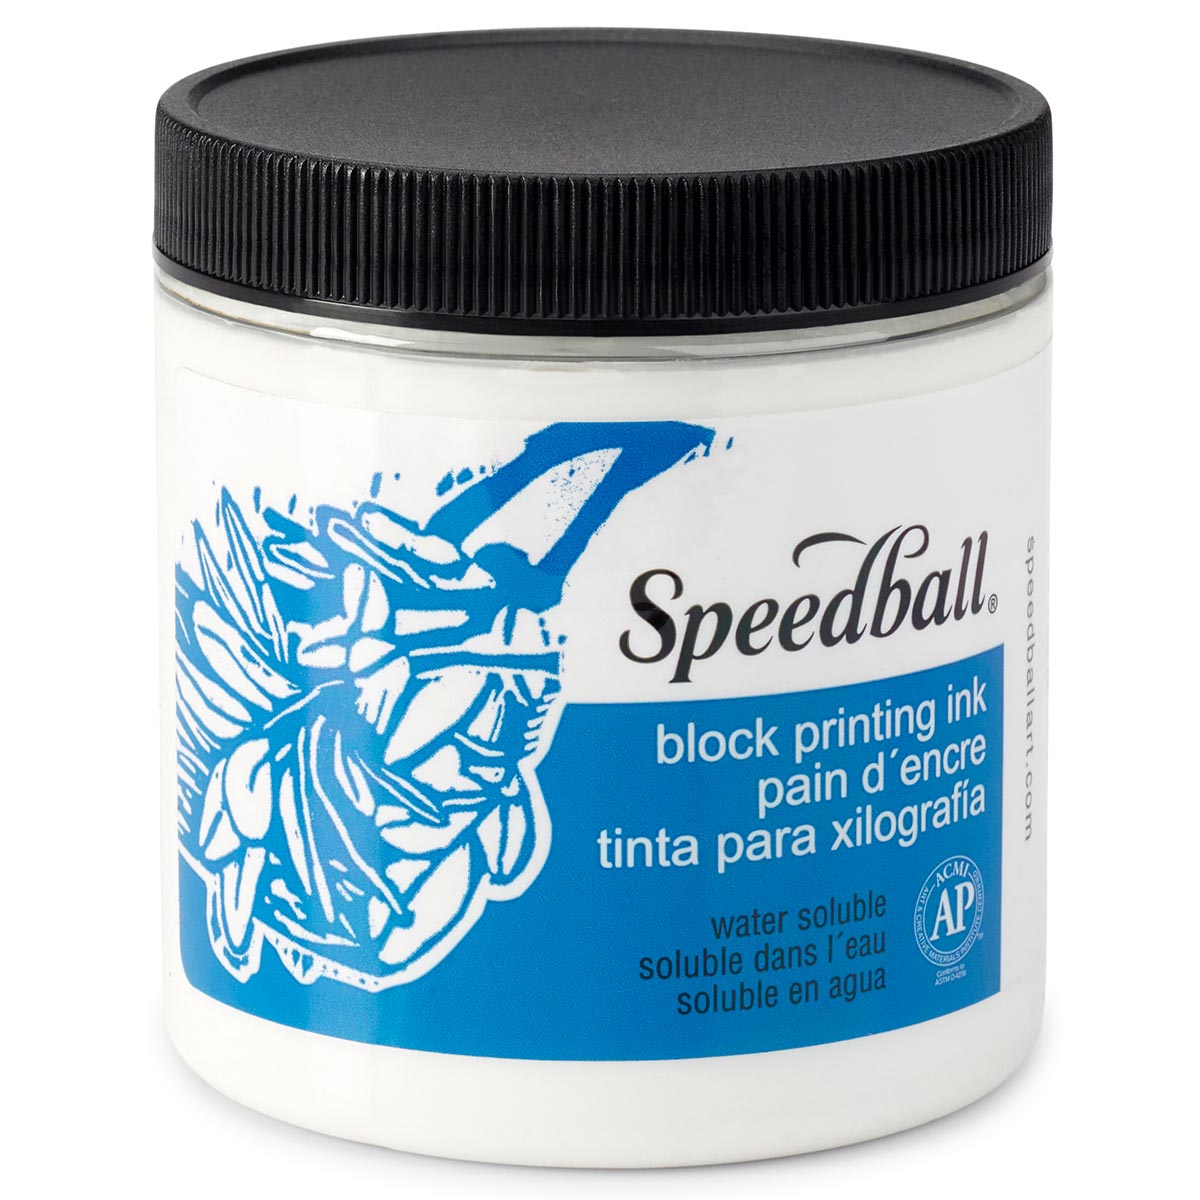 Speedball-Wasser lösliche Block-Tinte 236ml (8oz) -Weiß